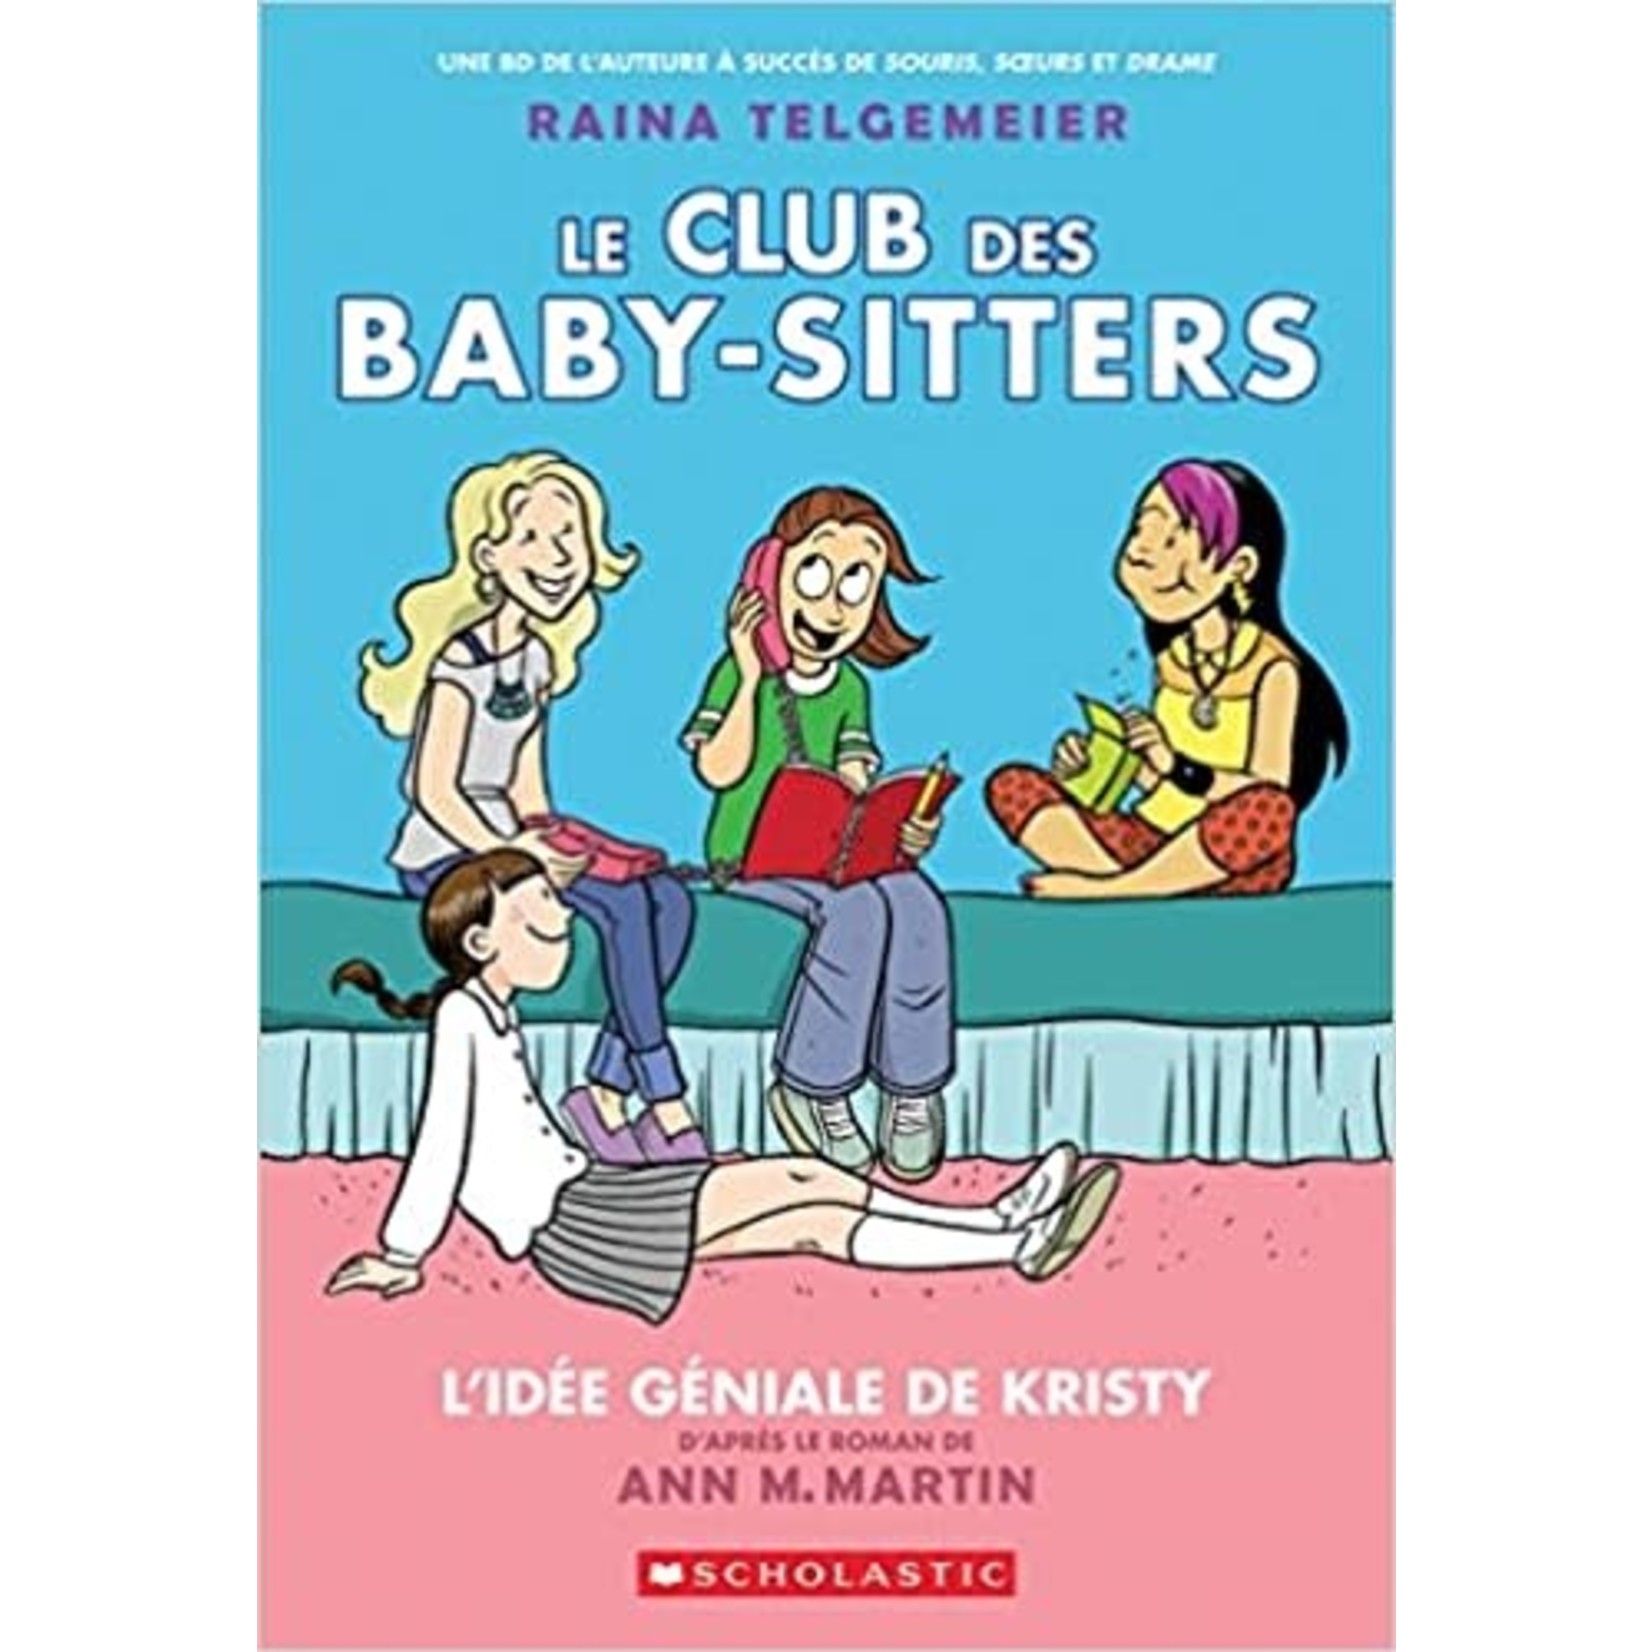 Le club des baby-sitters - L'idee geniale de Kristy (Book #1)